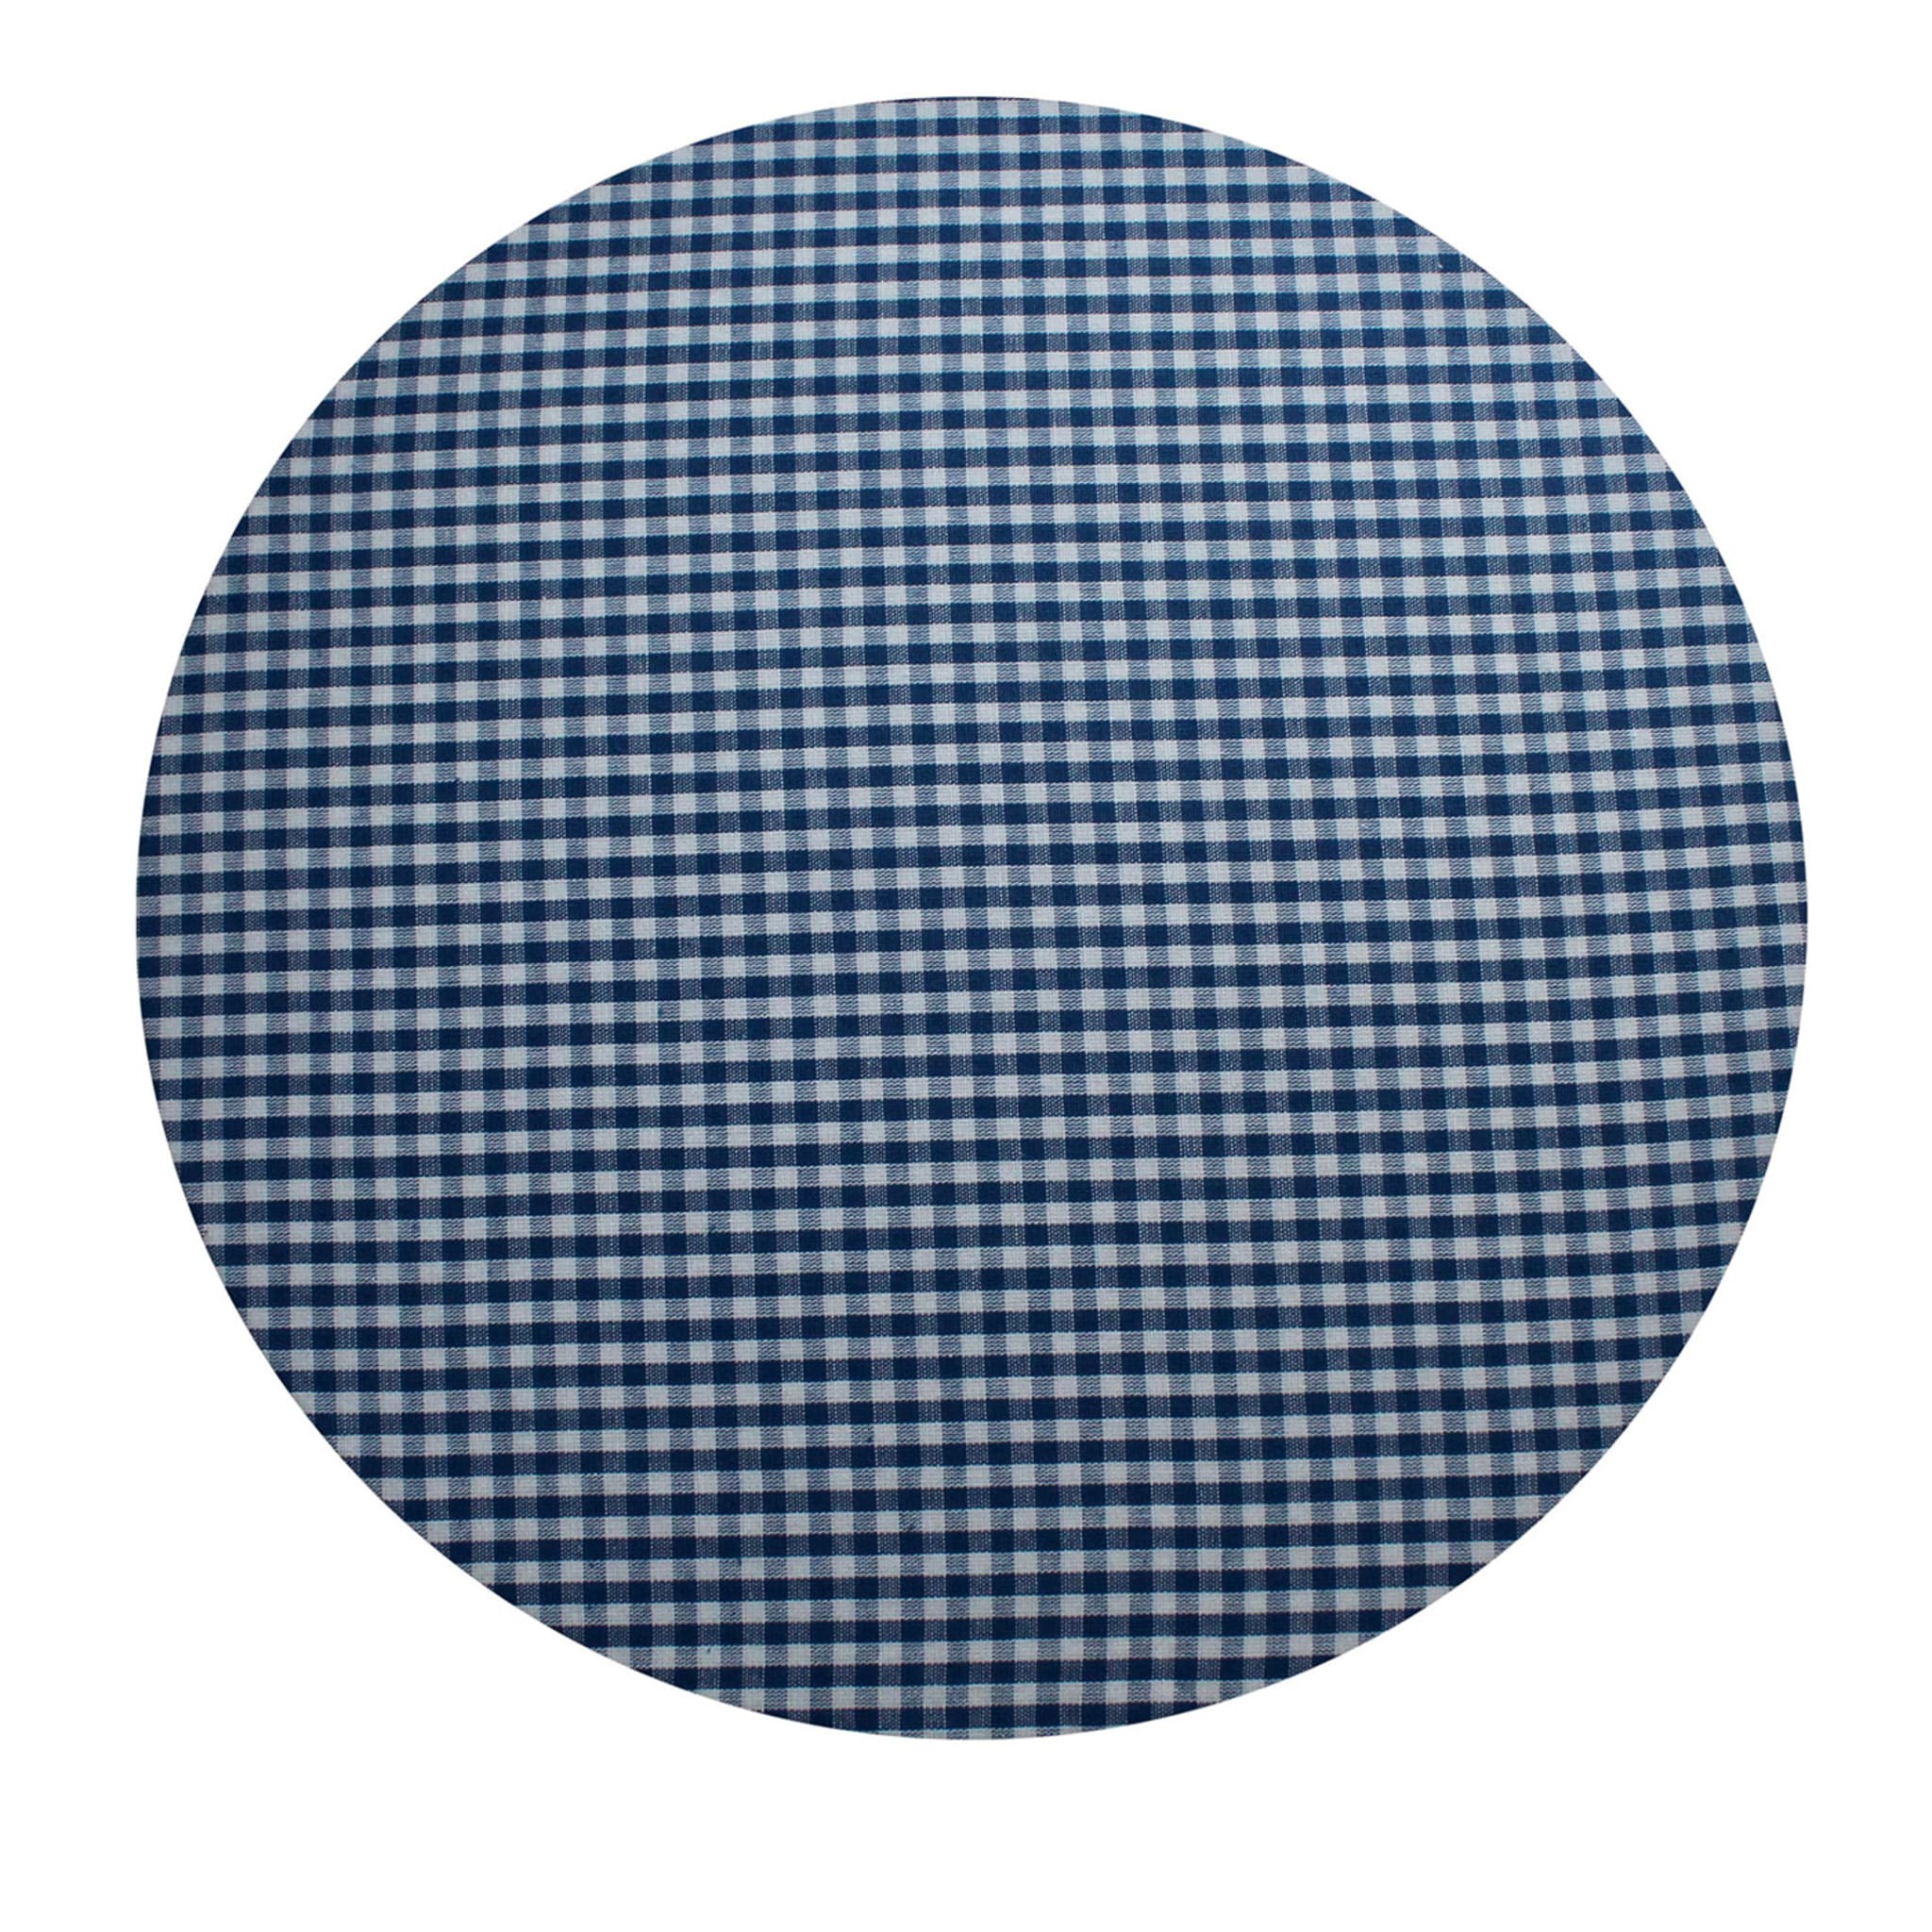 Tovaglietta rotonda blu e bianca Cuffiette Check #1 - Vista principale